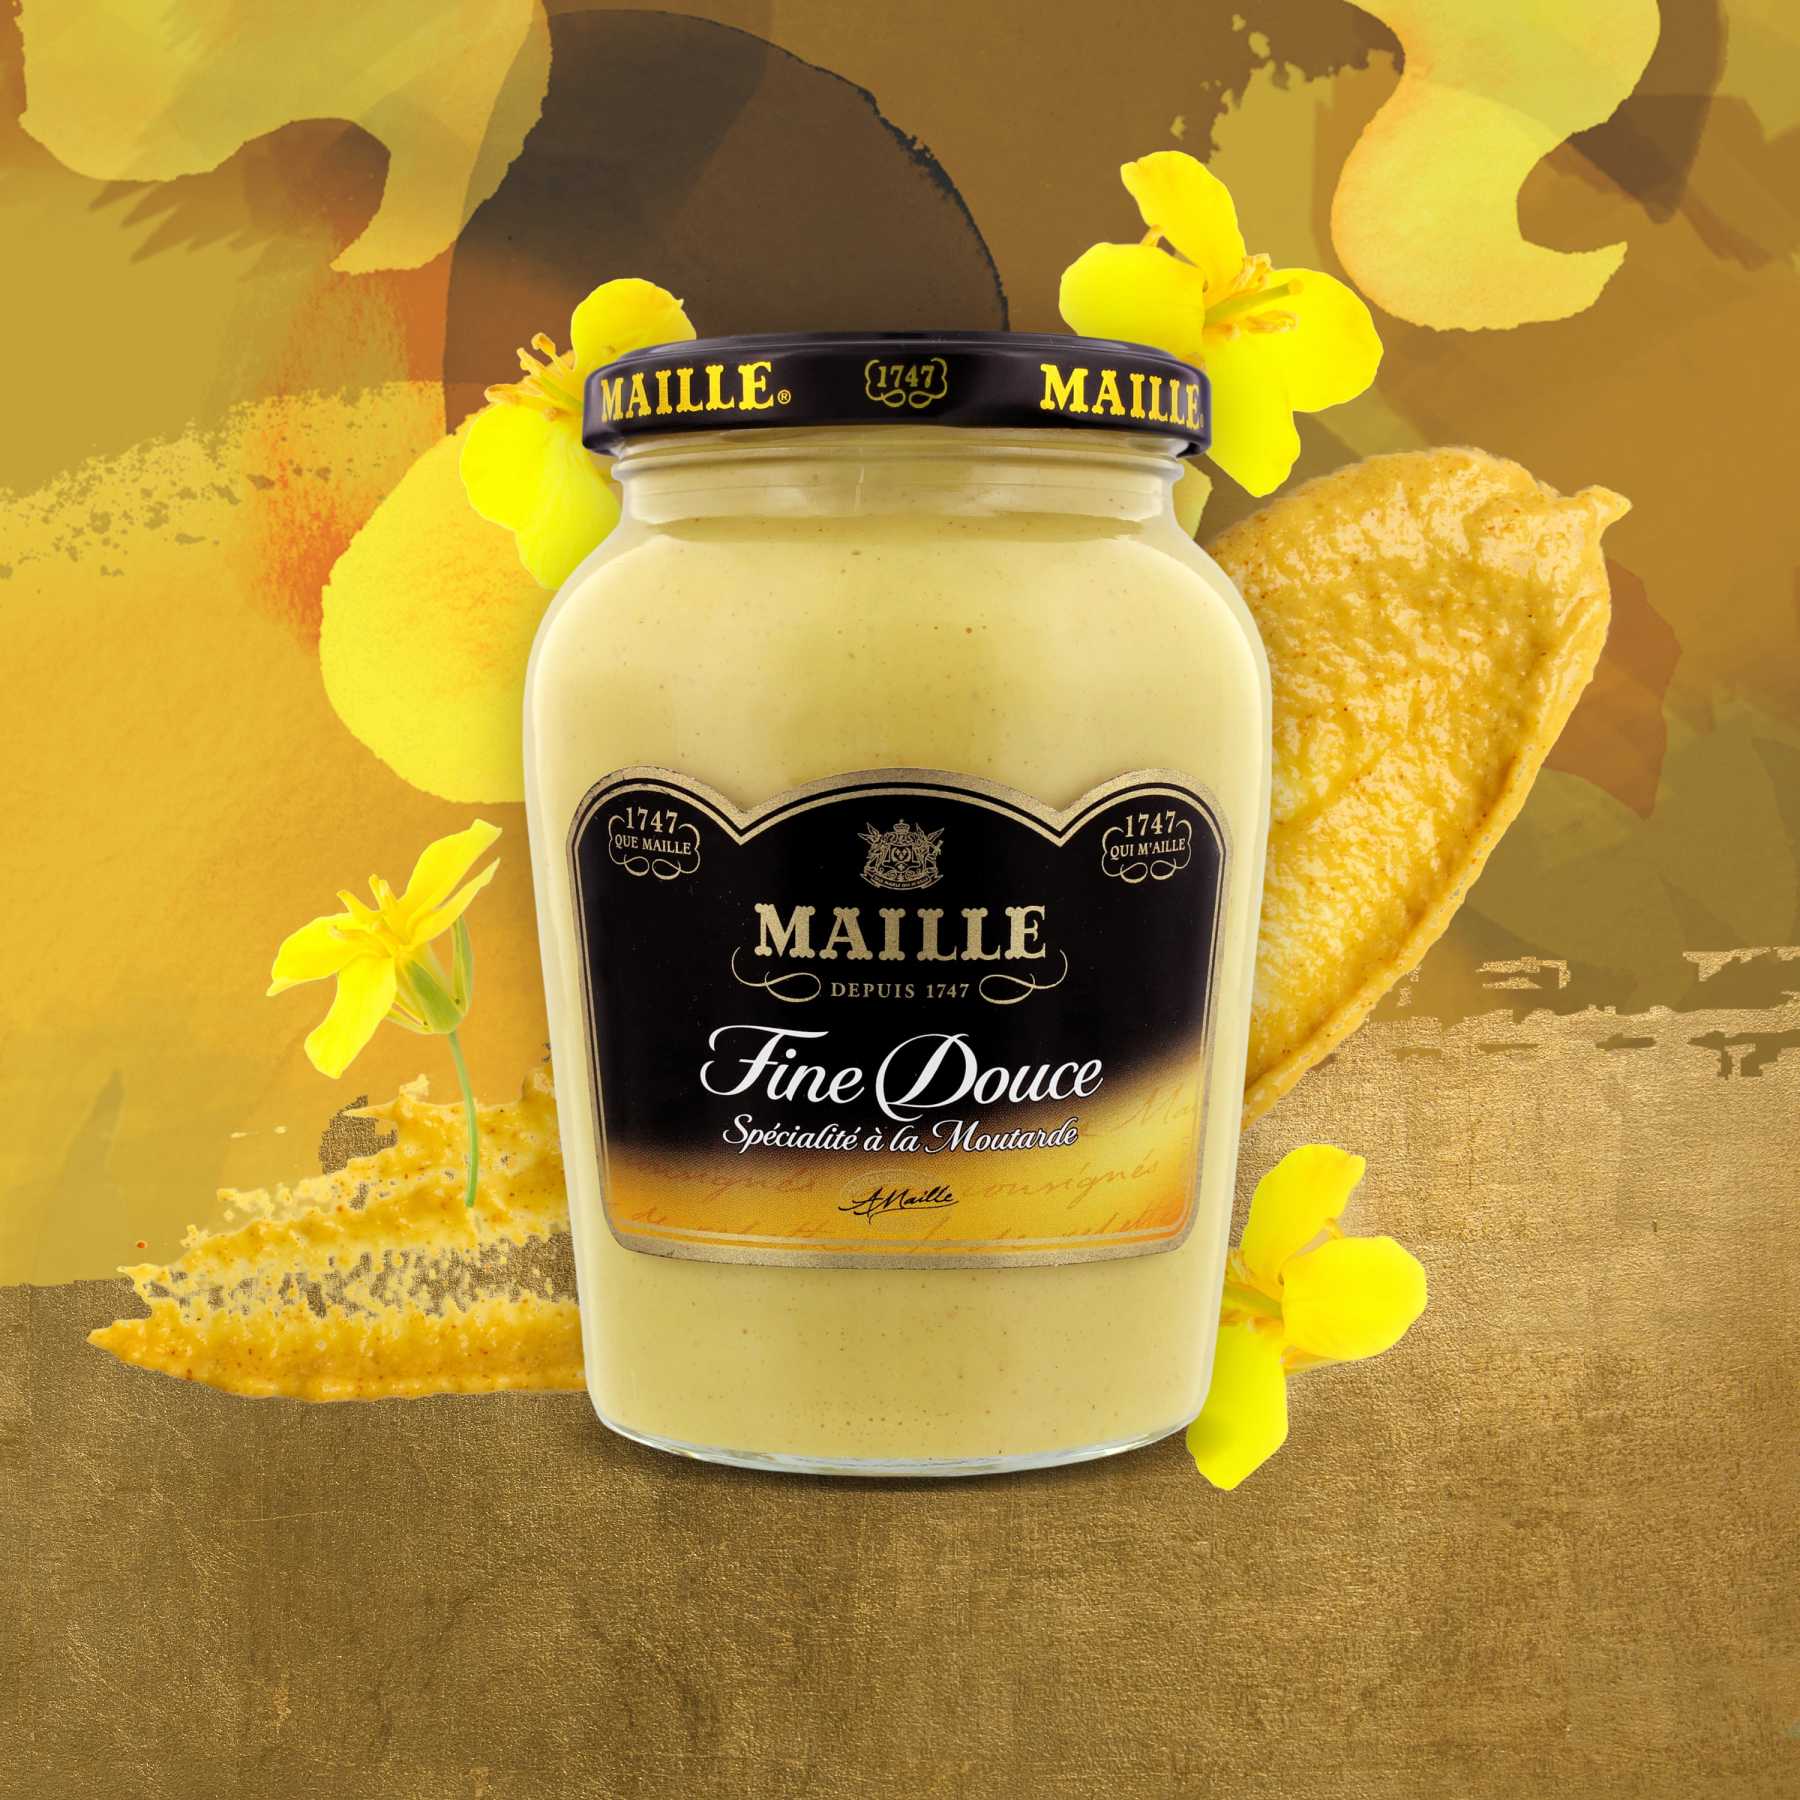 Maille - Spécialité à la Moutarde Fine Douce Bocal 370 g, new visual